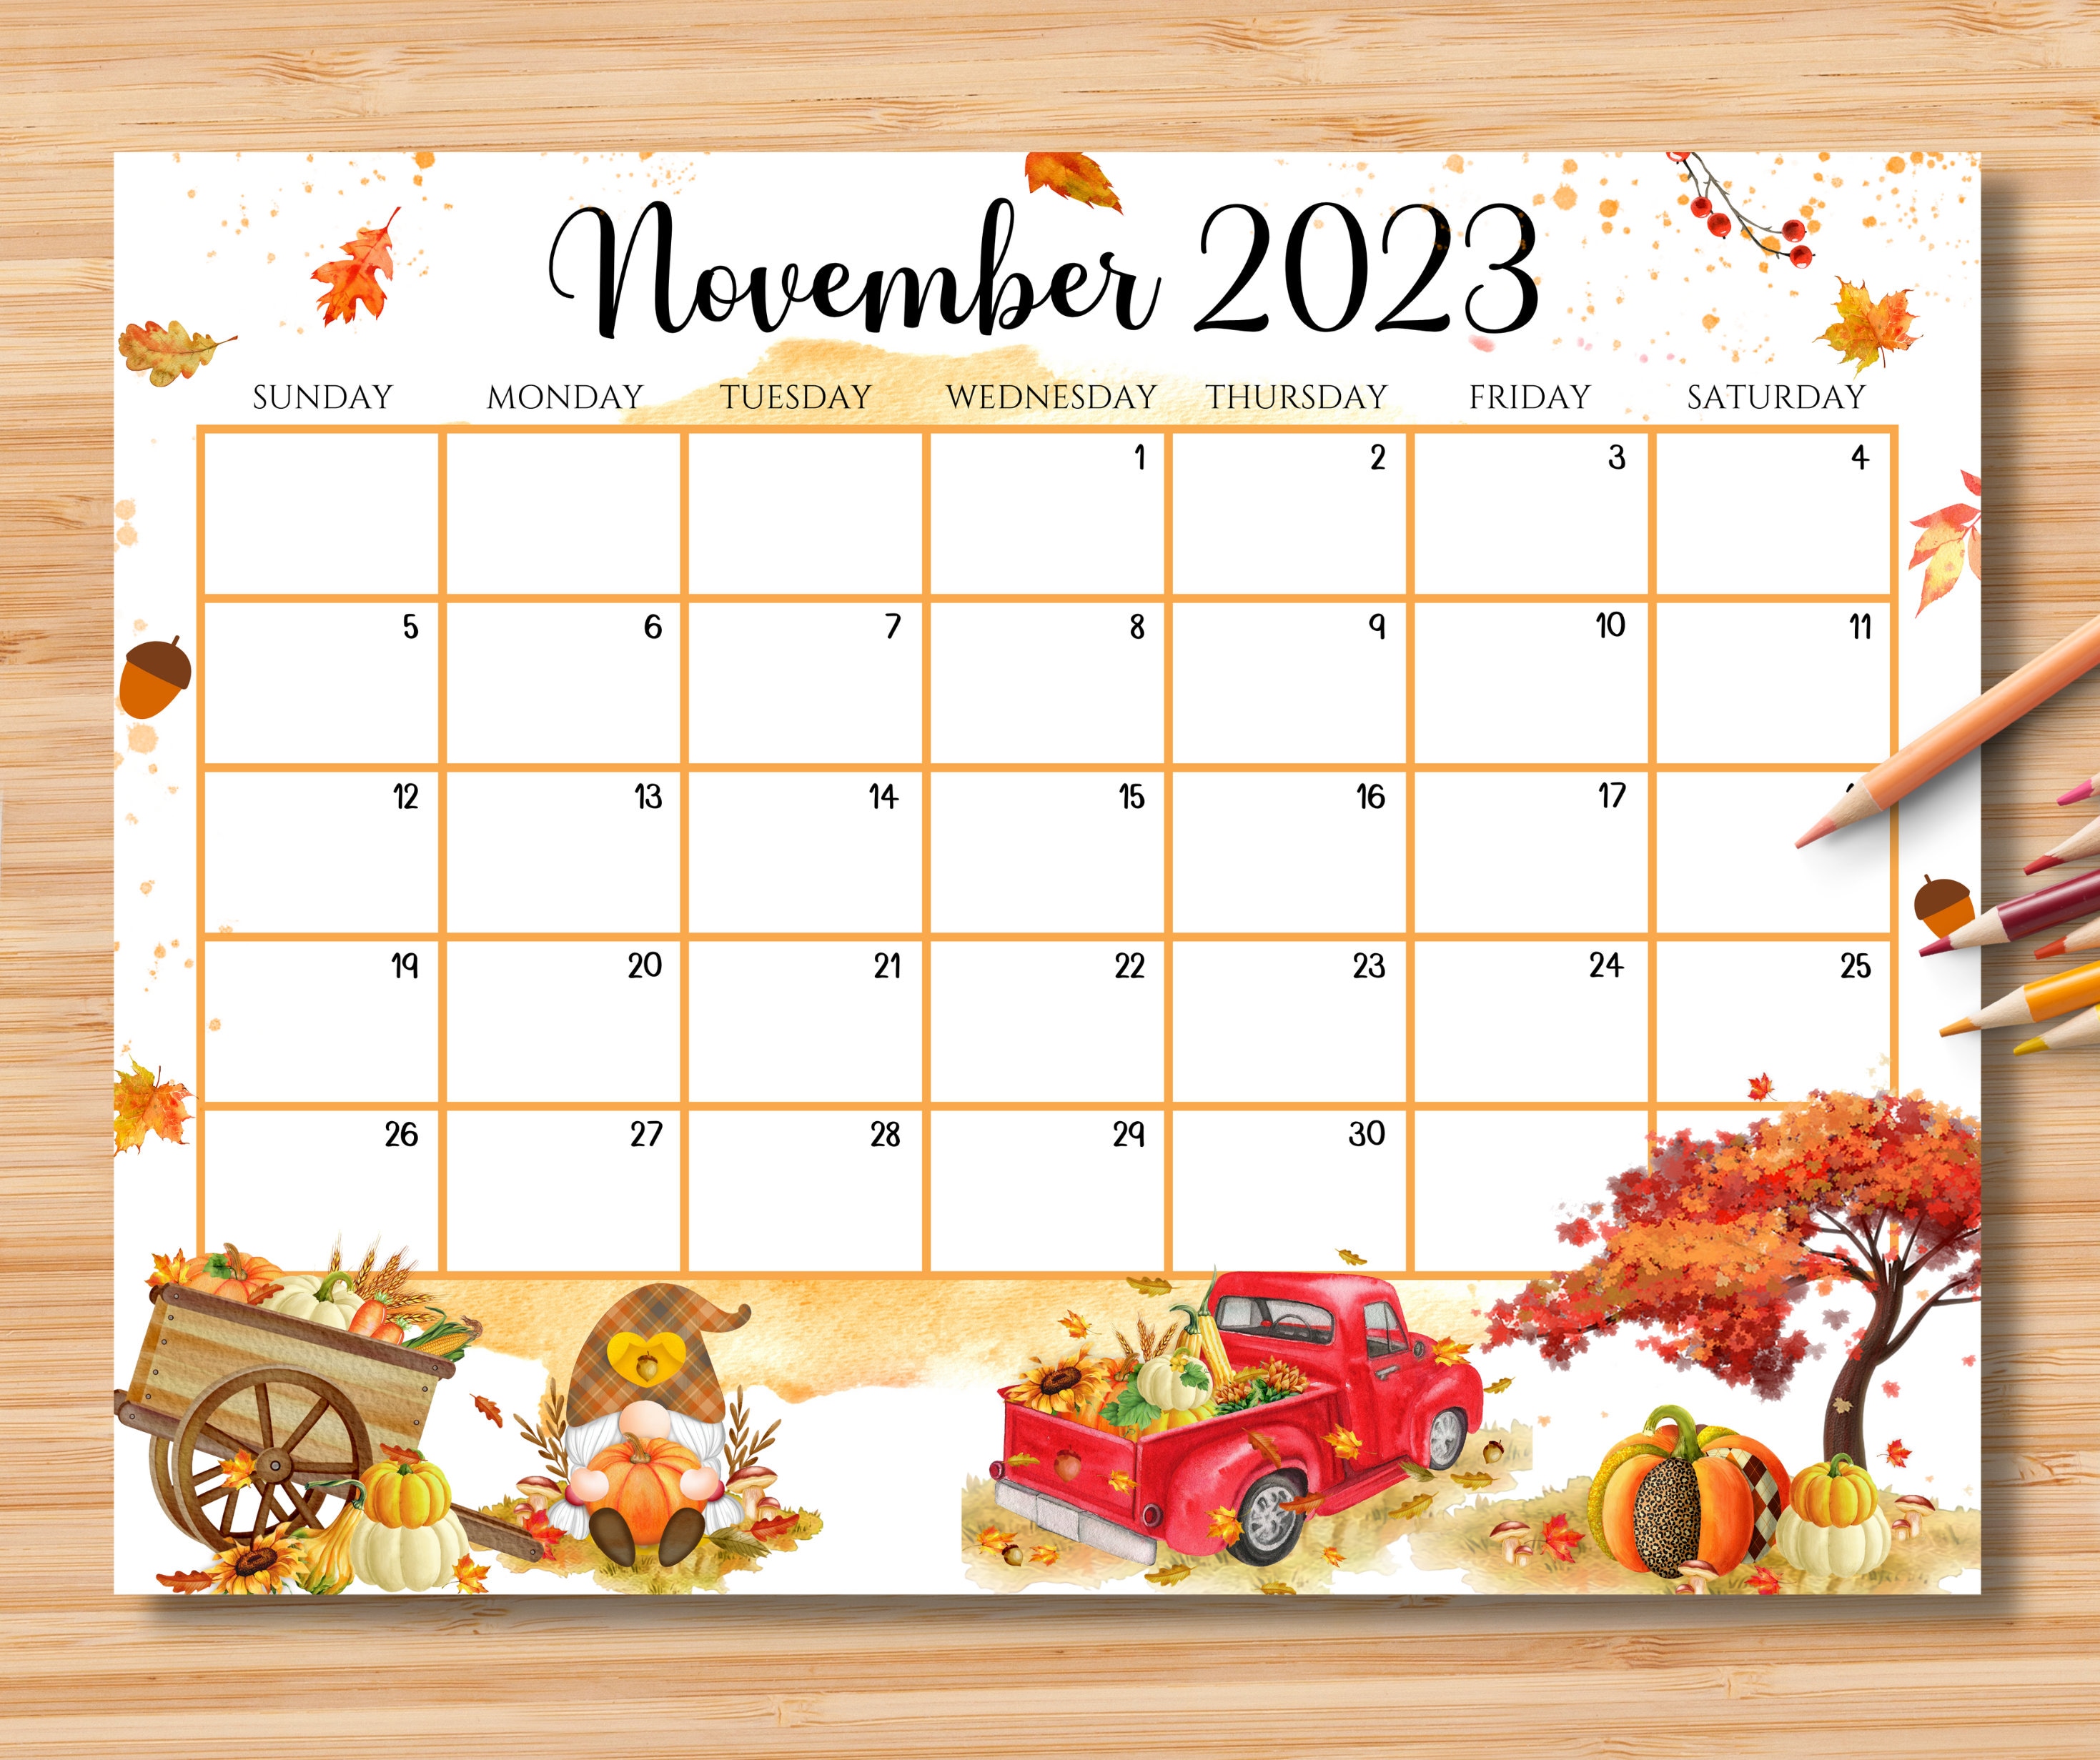 november-2023-calendar-calendar-get-calendar-2023-update